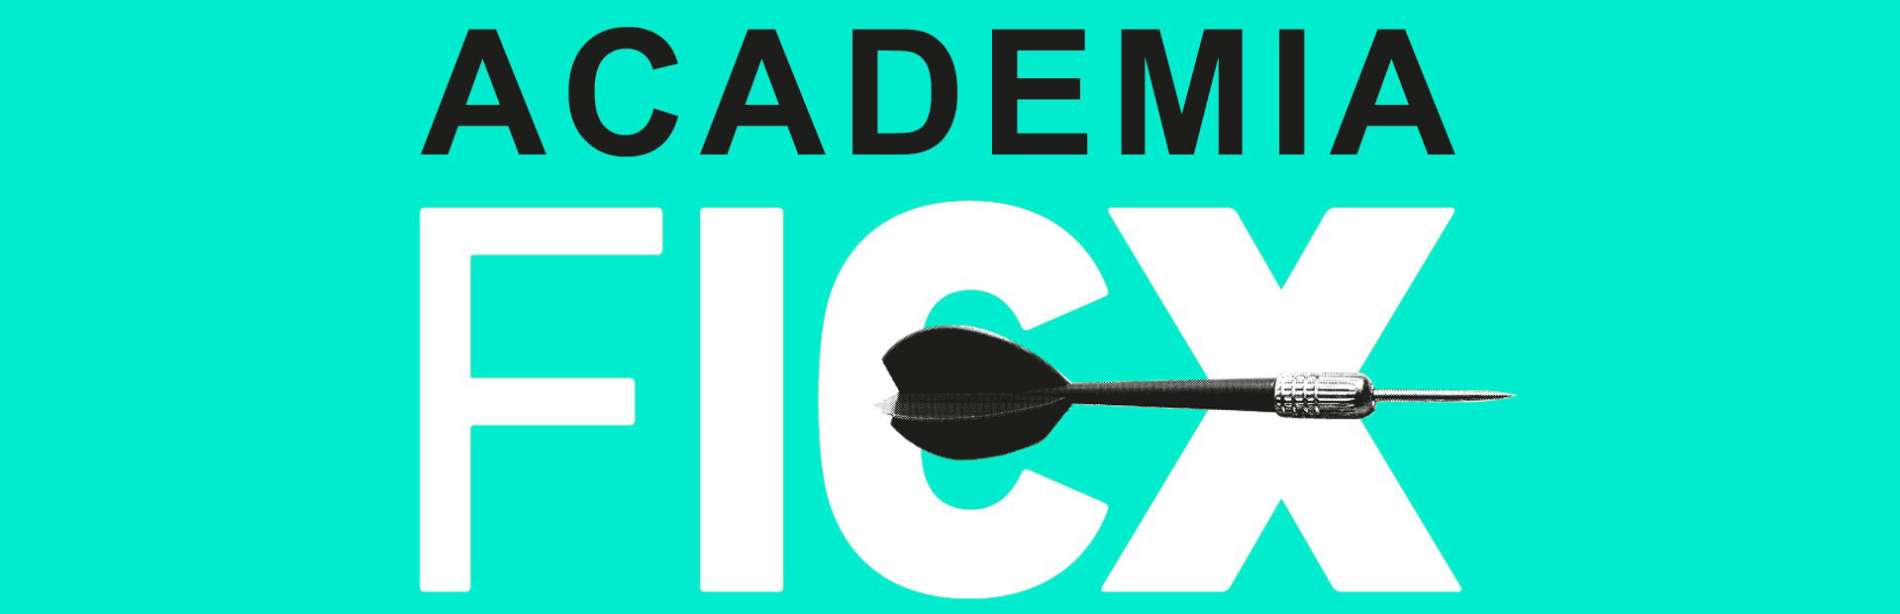 Cabecera Academia FICX